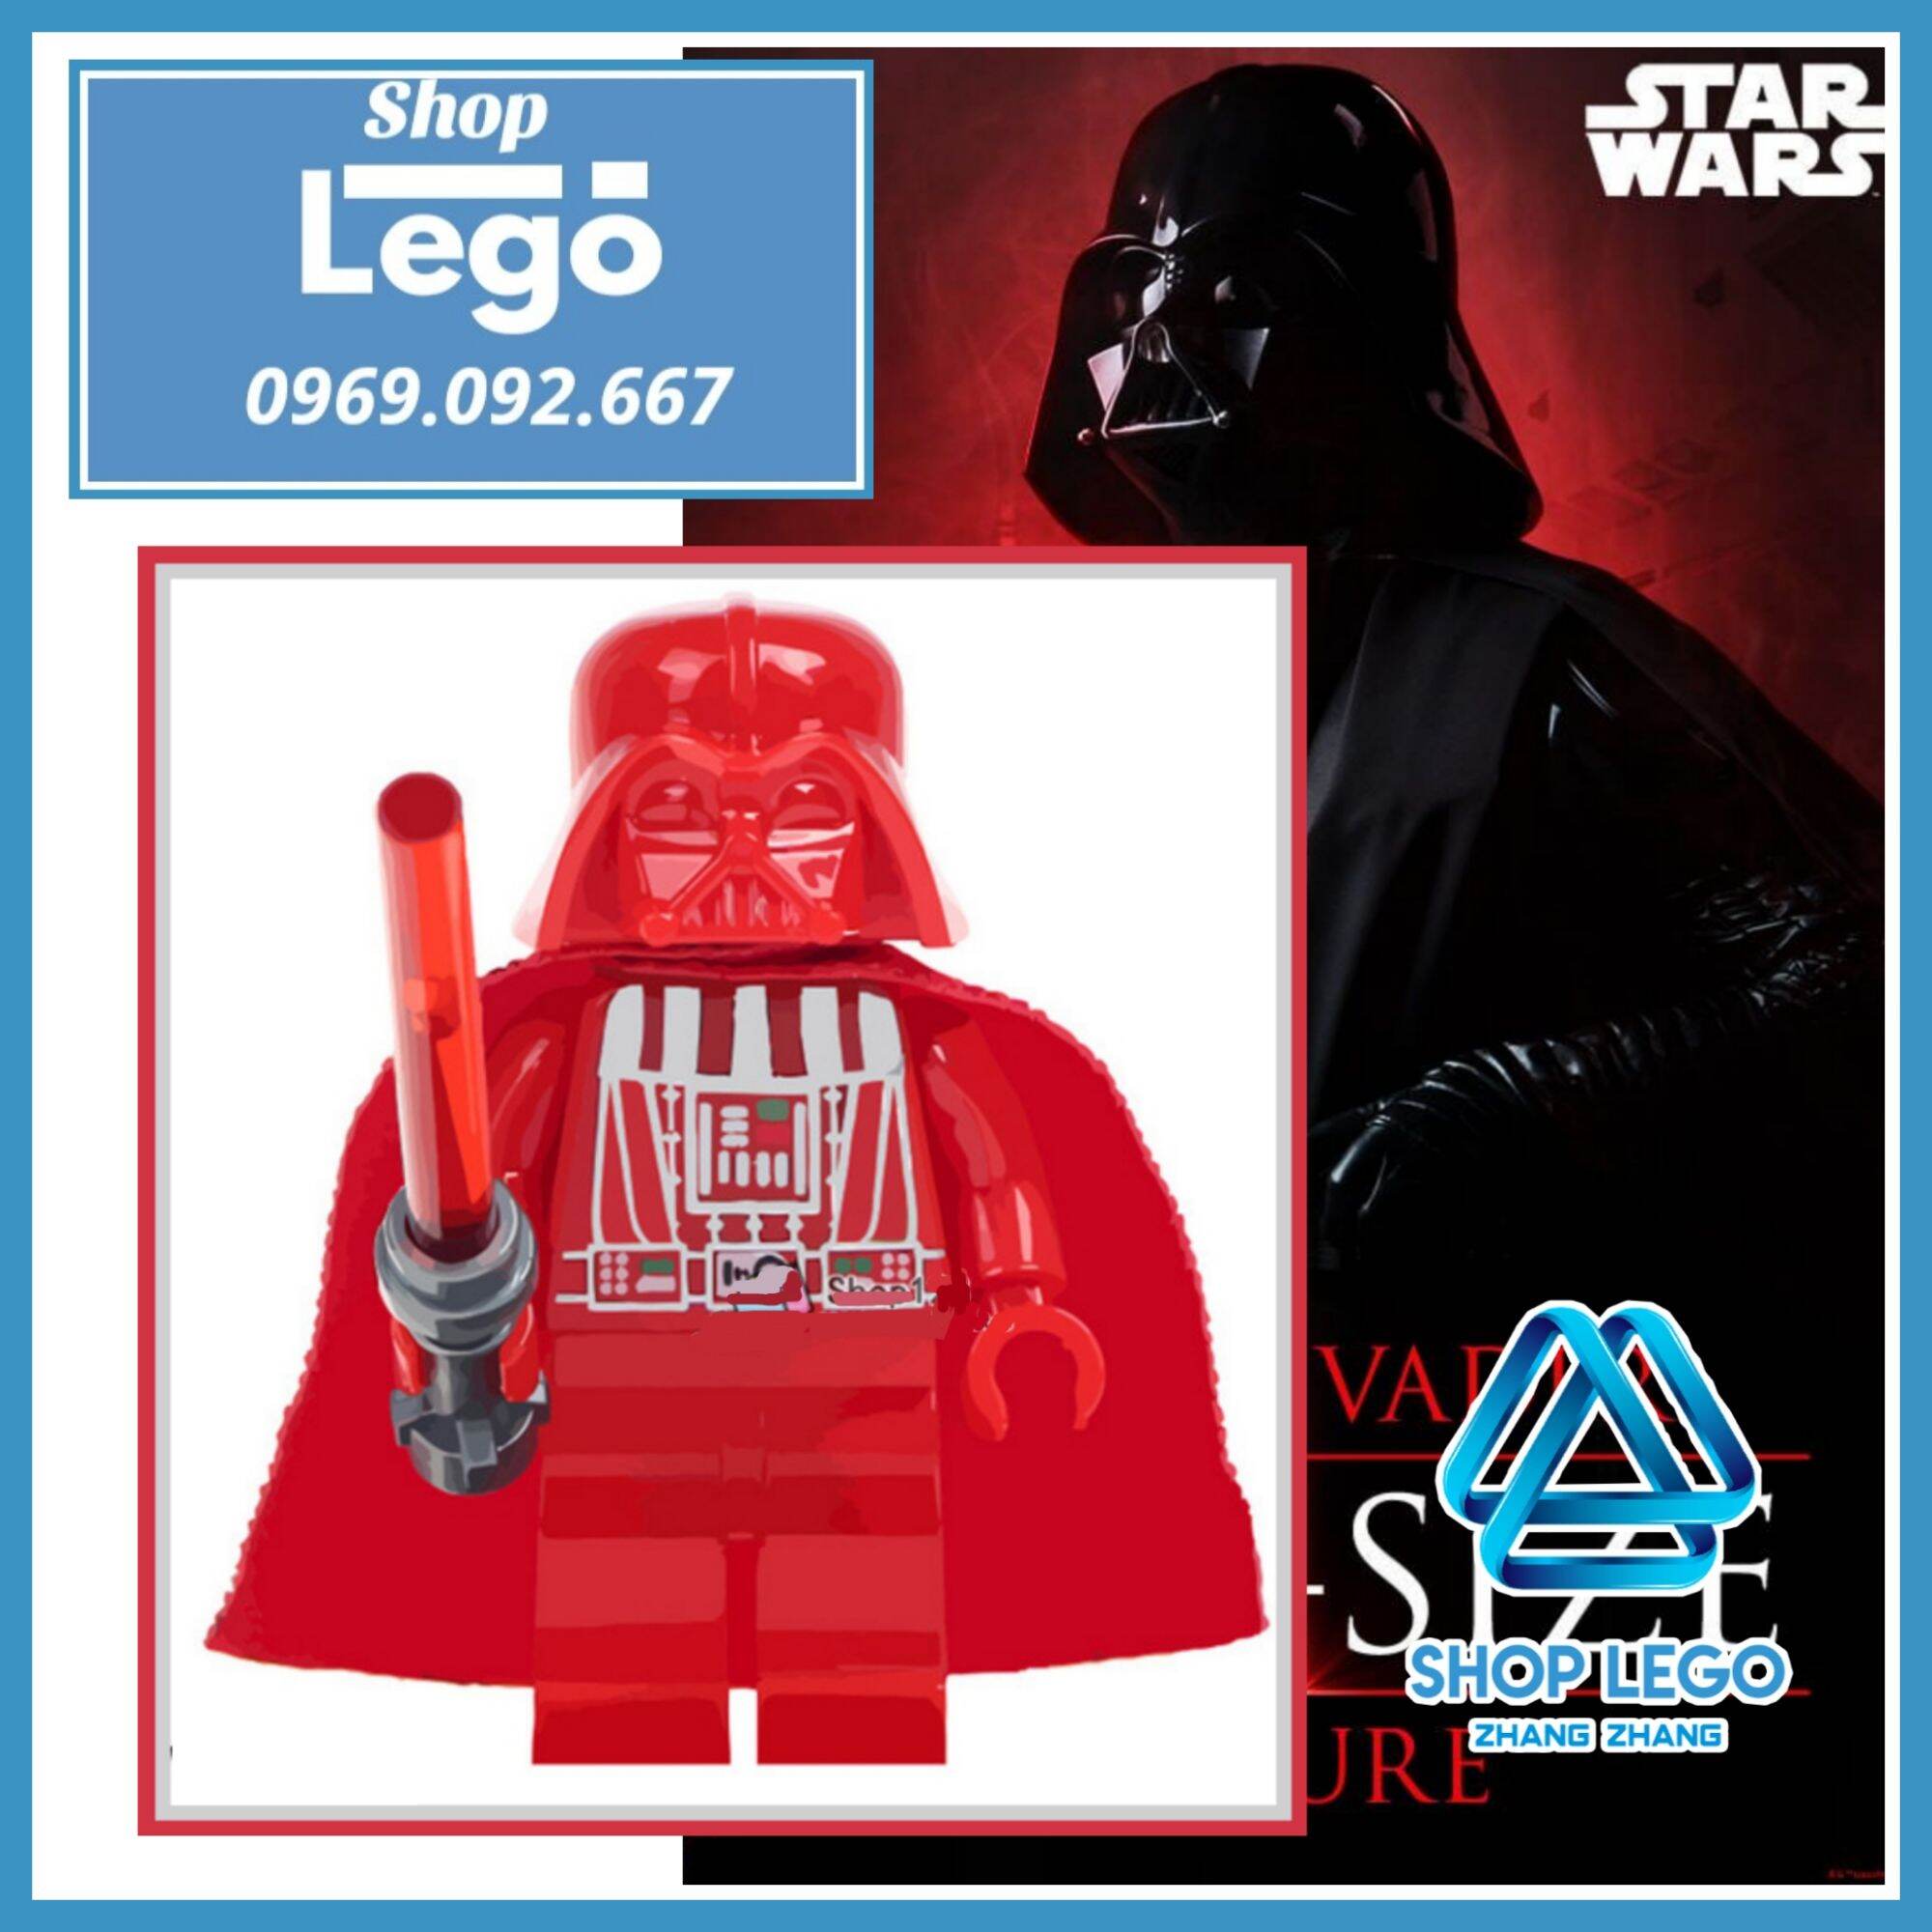 [FREESHIP MAX] Xếp hình Star Wars Prototype Red Darth Vader Helmet Lego Minifigures WM297 [Shop Đồ Chơi Zhang Zhang]